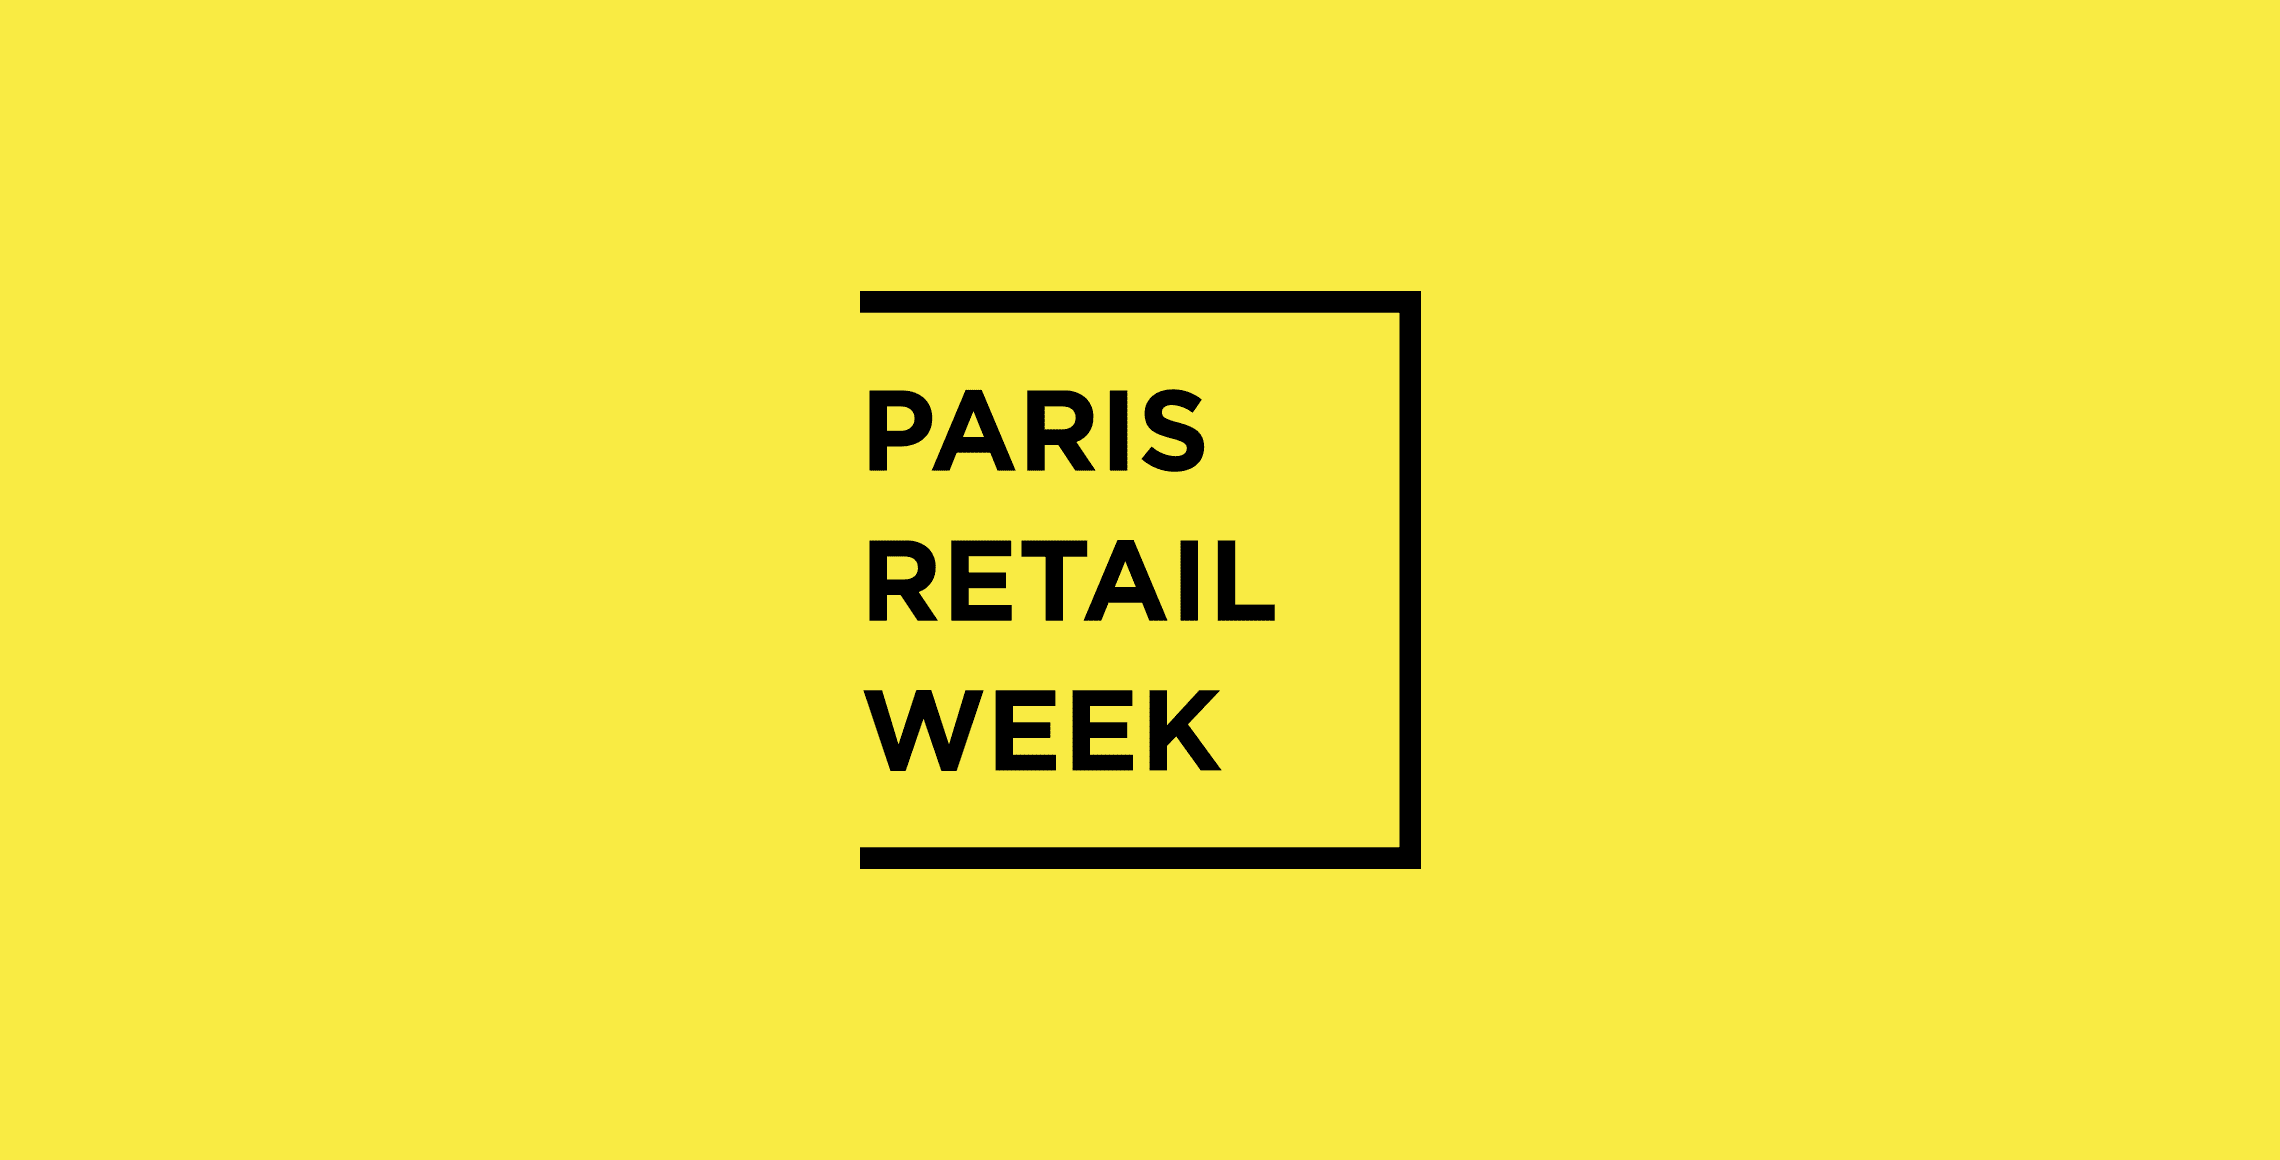 Paris Retail week logo